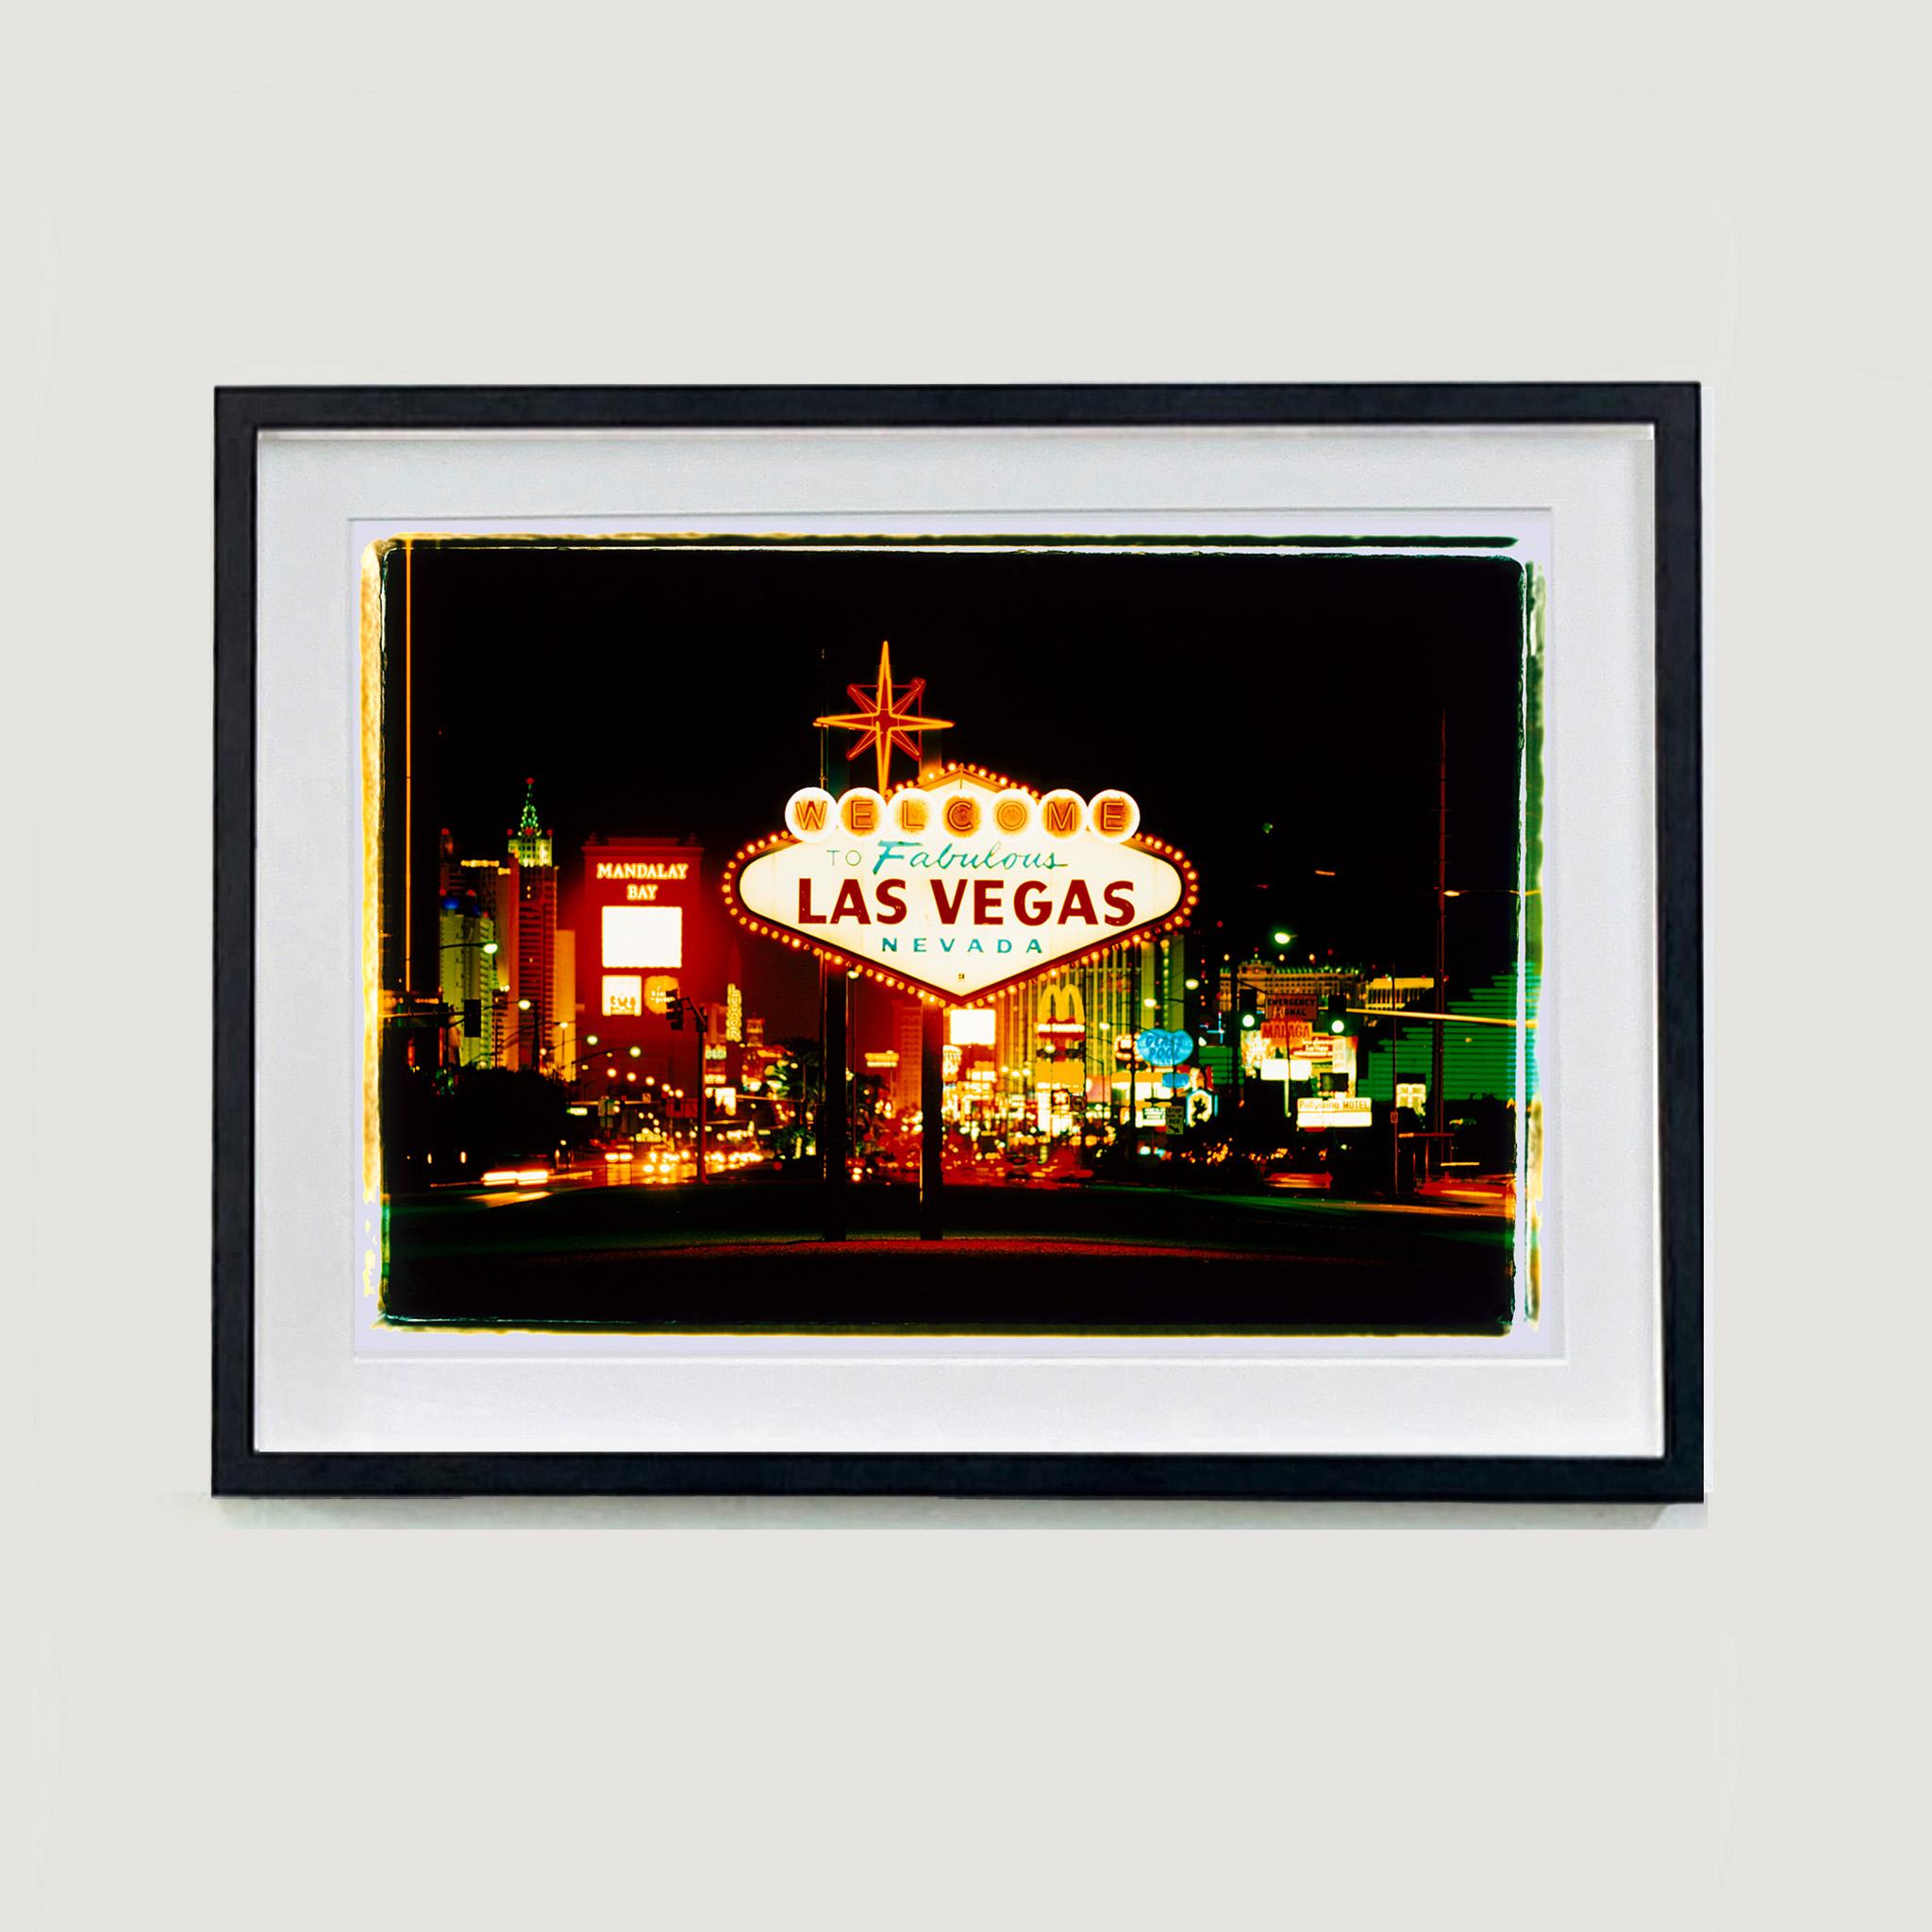 Arriving, Las Vegas, photographie Pop Art américaine couleur - Print de Richard Heeps